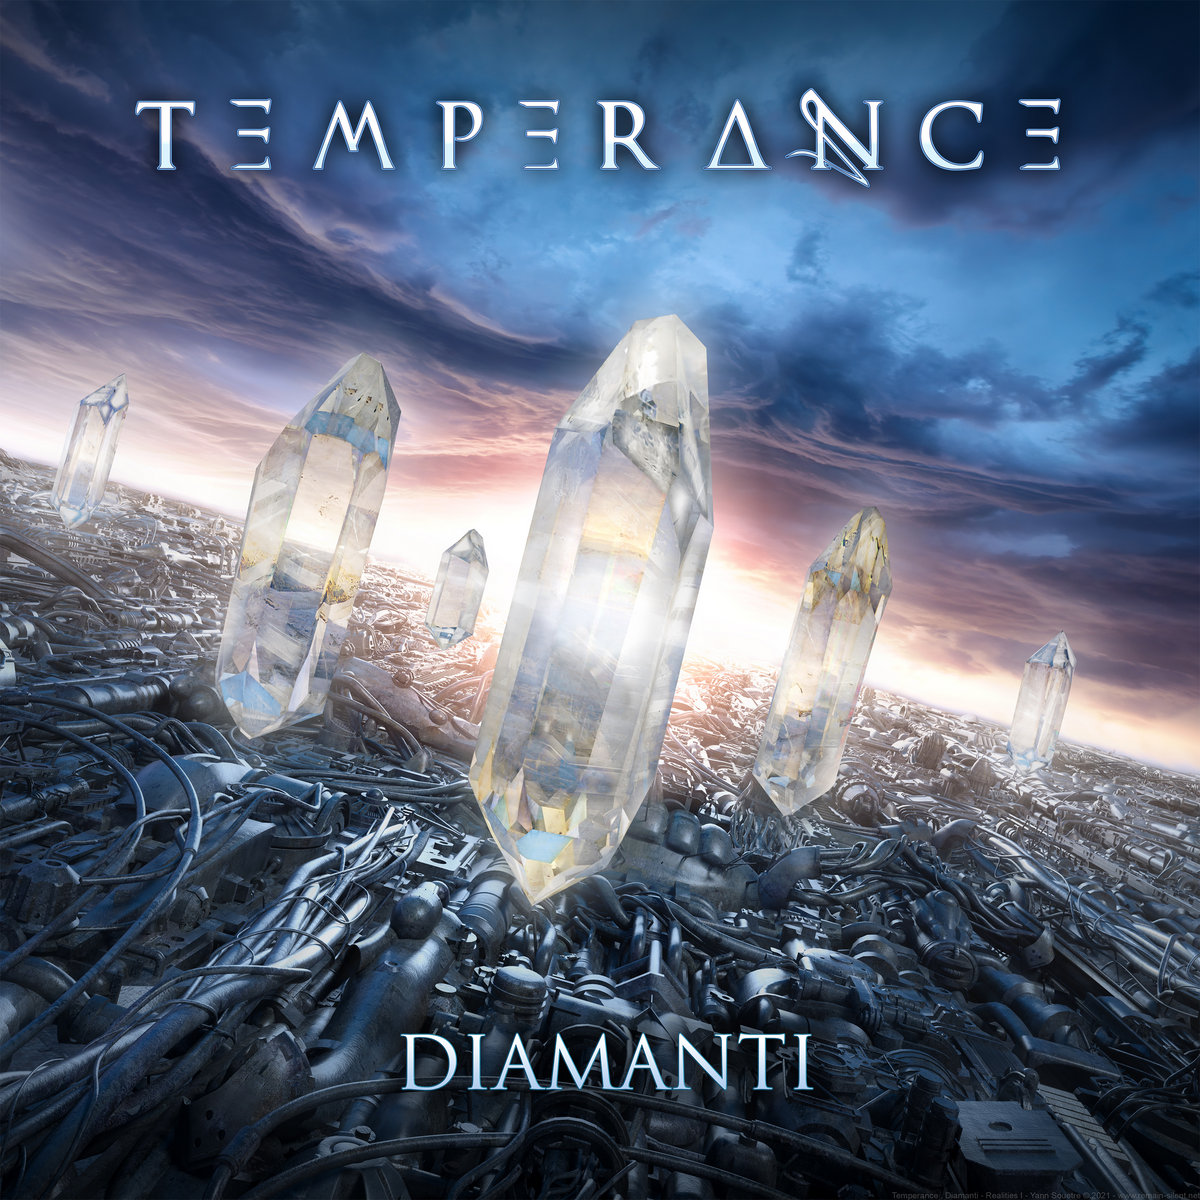 Temperance – "Diamanti"